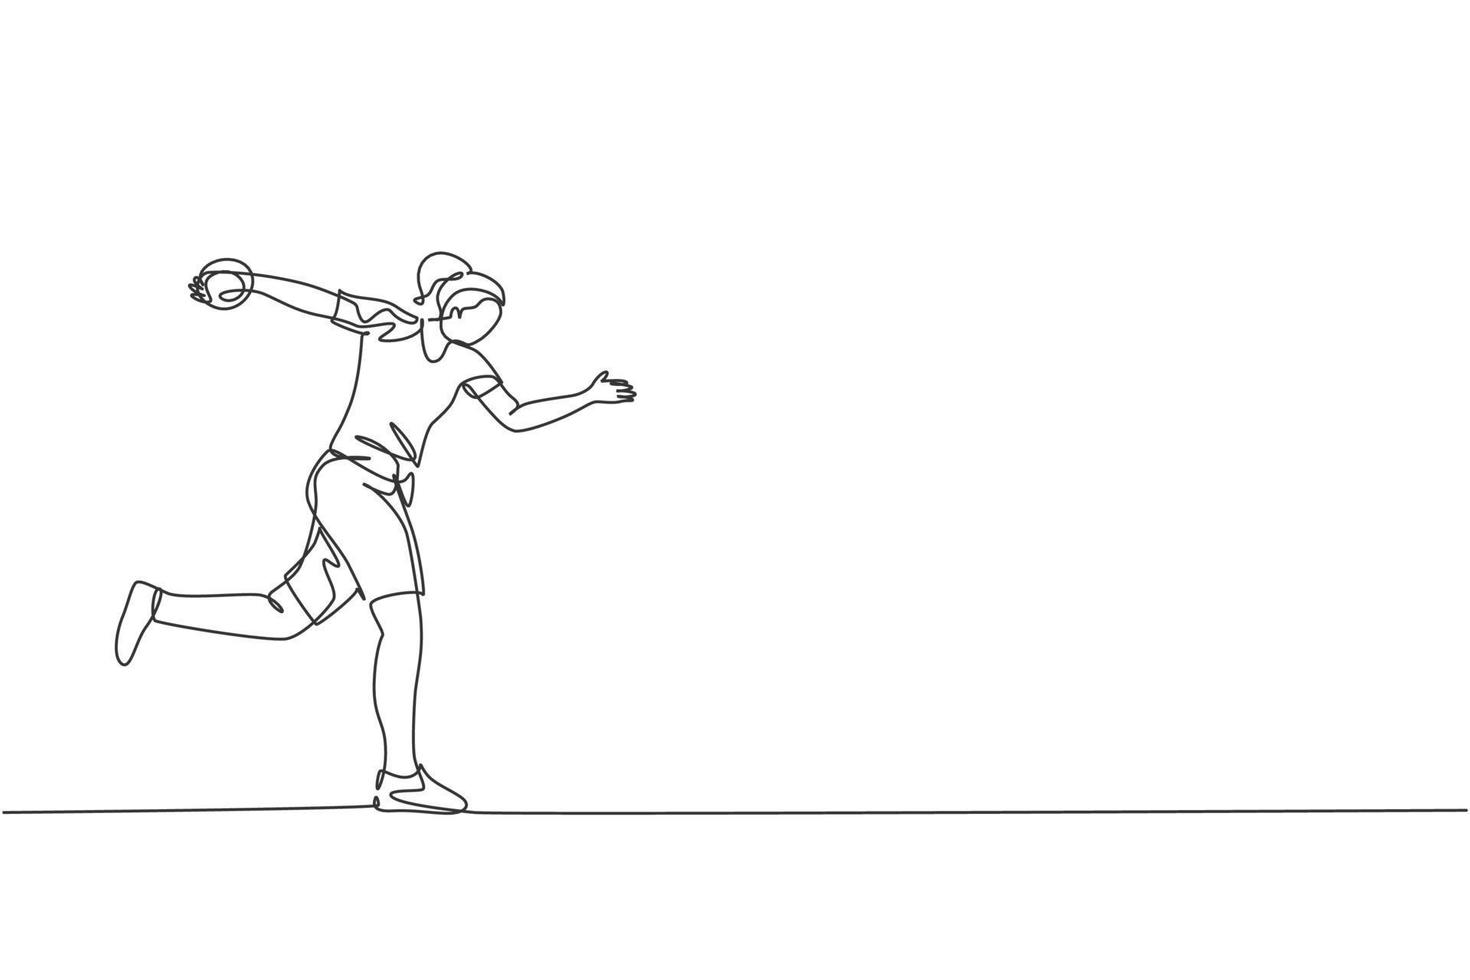 un disegno a linea singola dell'esercizio di una giovane donna energica per lanciare con forza il discus nell'illustrazione vettoriale del campo. concetto di sport atletico stile di vita sano. moderno disegno a linea continua